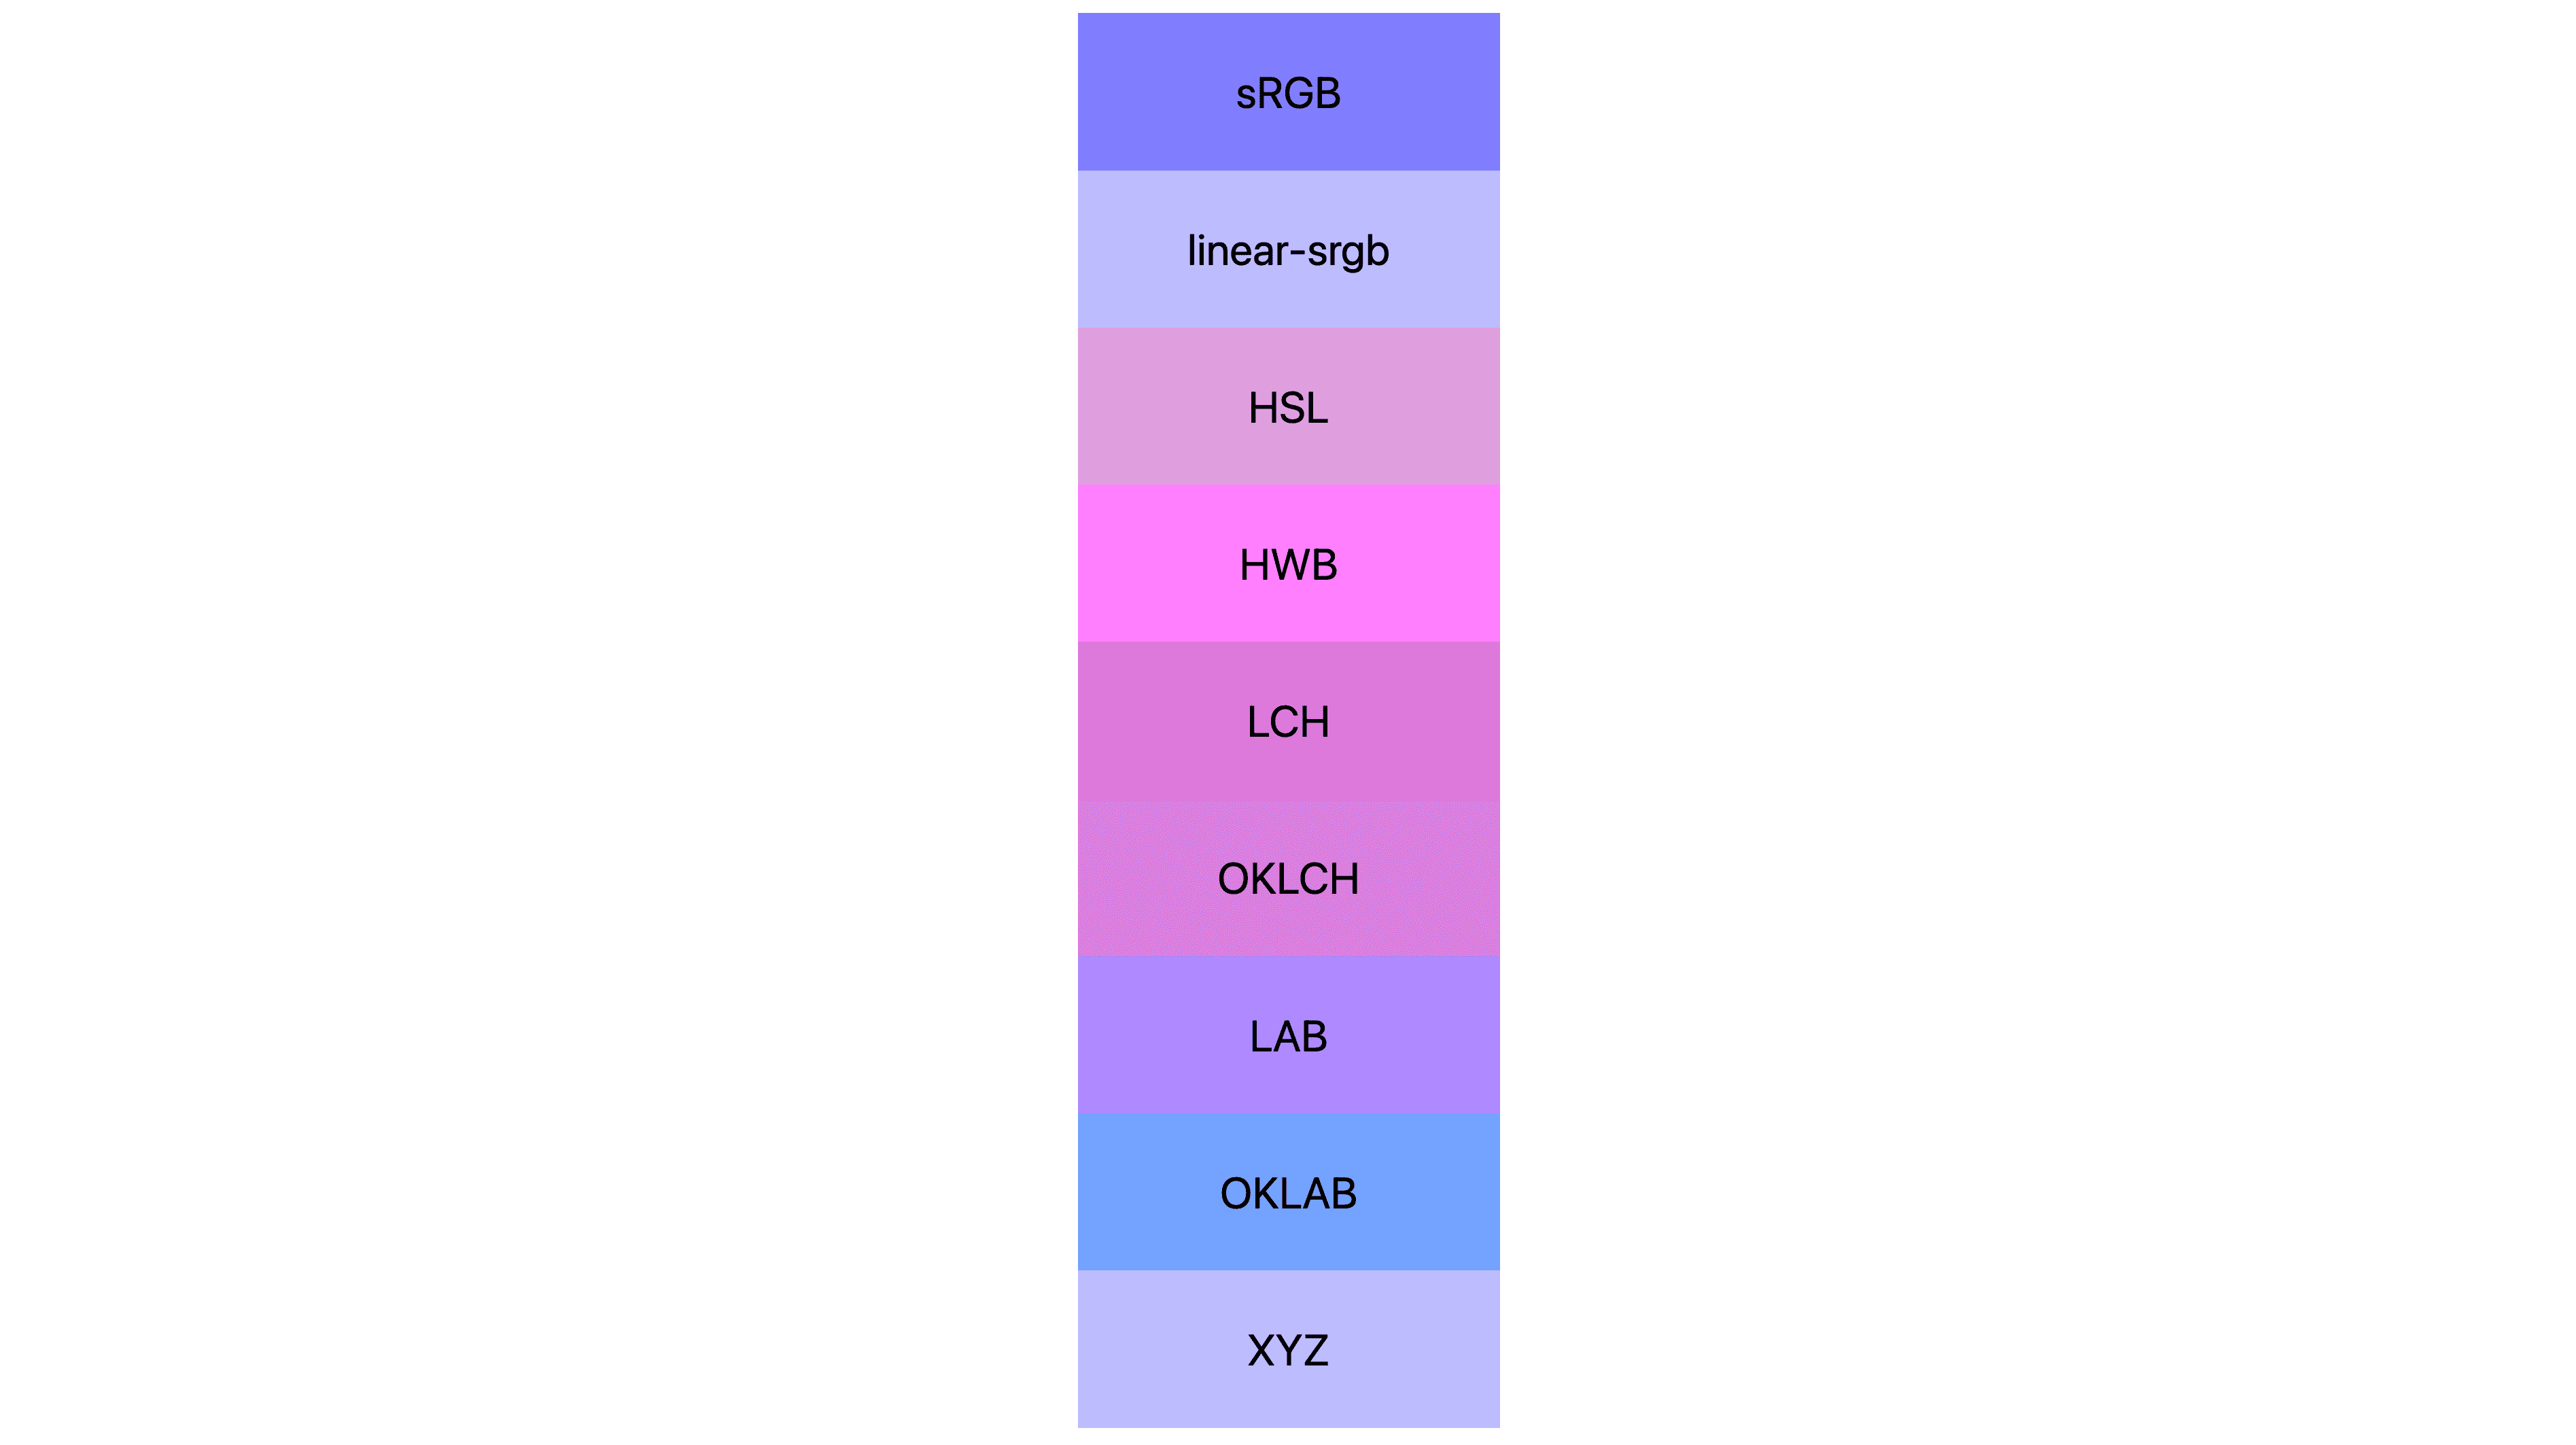 7 espacios de color (srgb, linear-srgb, lch, oklch, lab, oklab, xyz) cada uno con resultados diferentes. Muchas son de color rosa o púrpura, mientras que otras aún son azules.